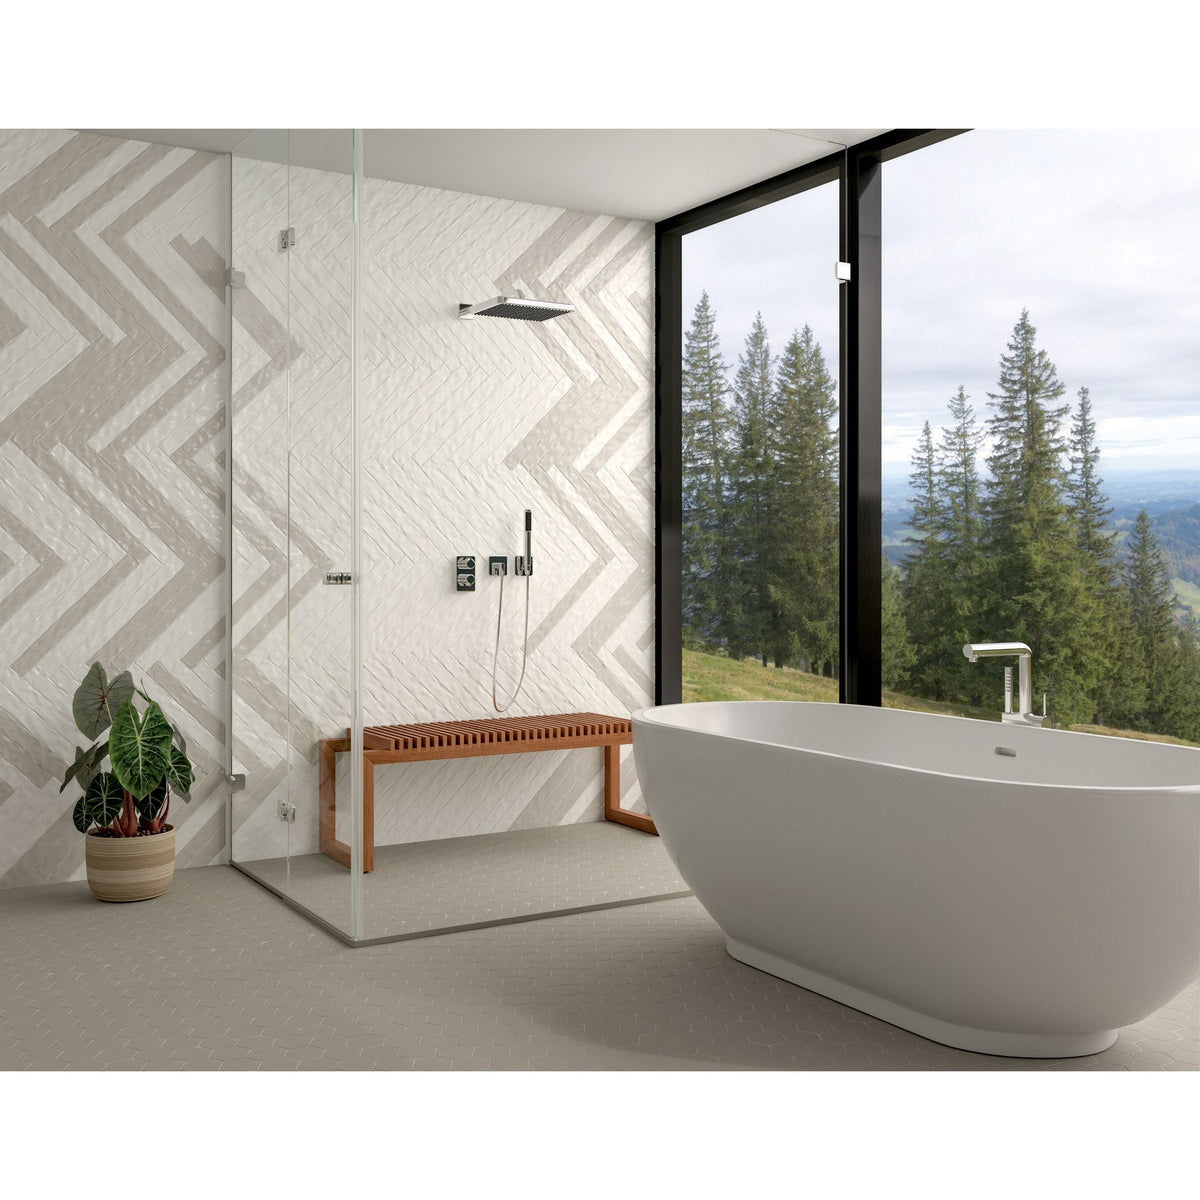 Marazzi - Artistic Reflections™ 2 in. x 20 in. Ceramic Tile - Mist Glossy Room Scene